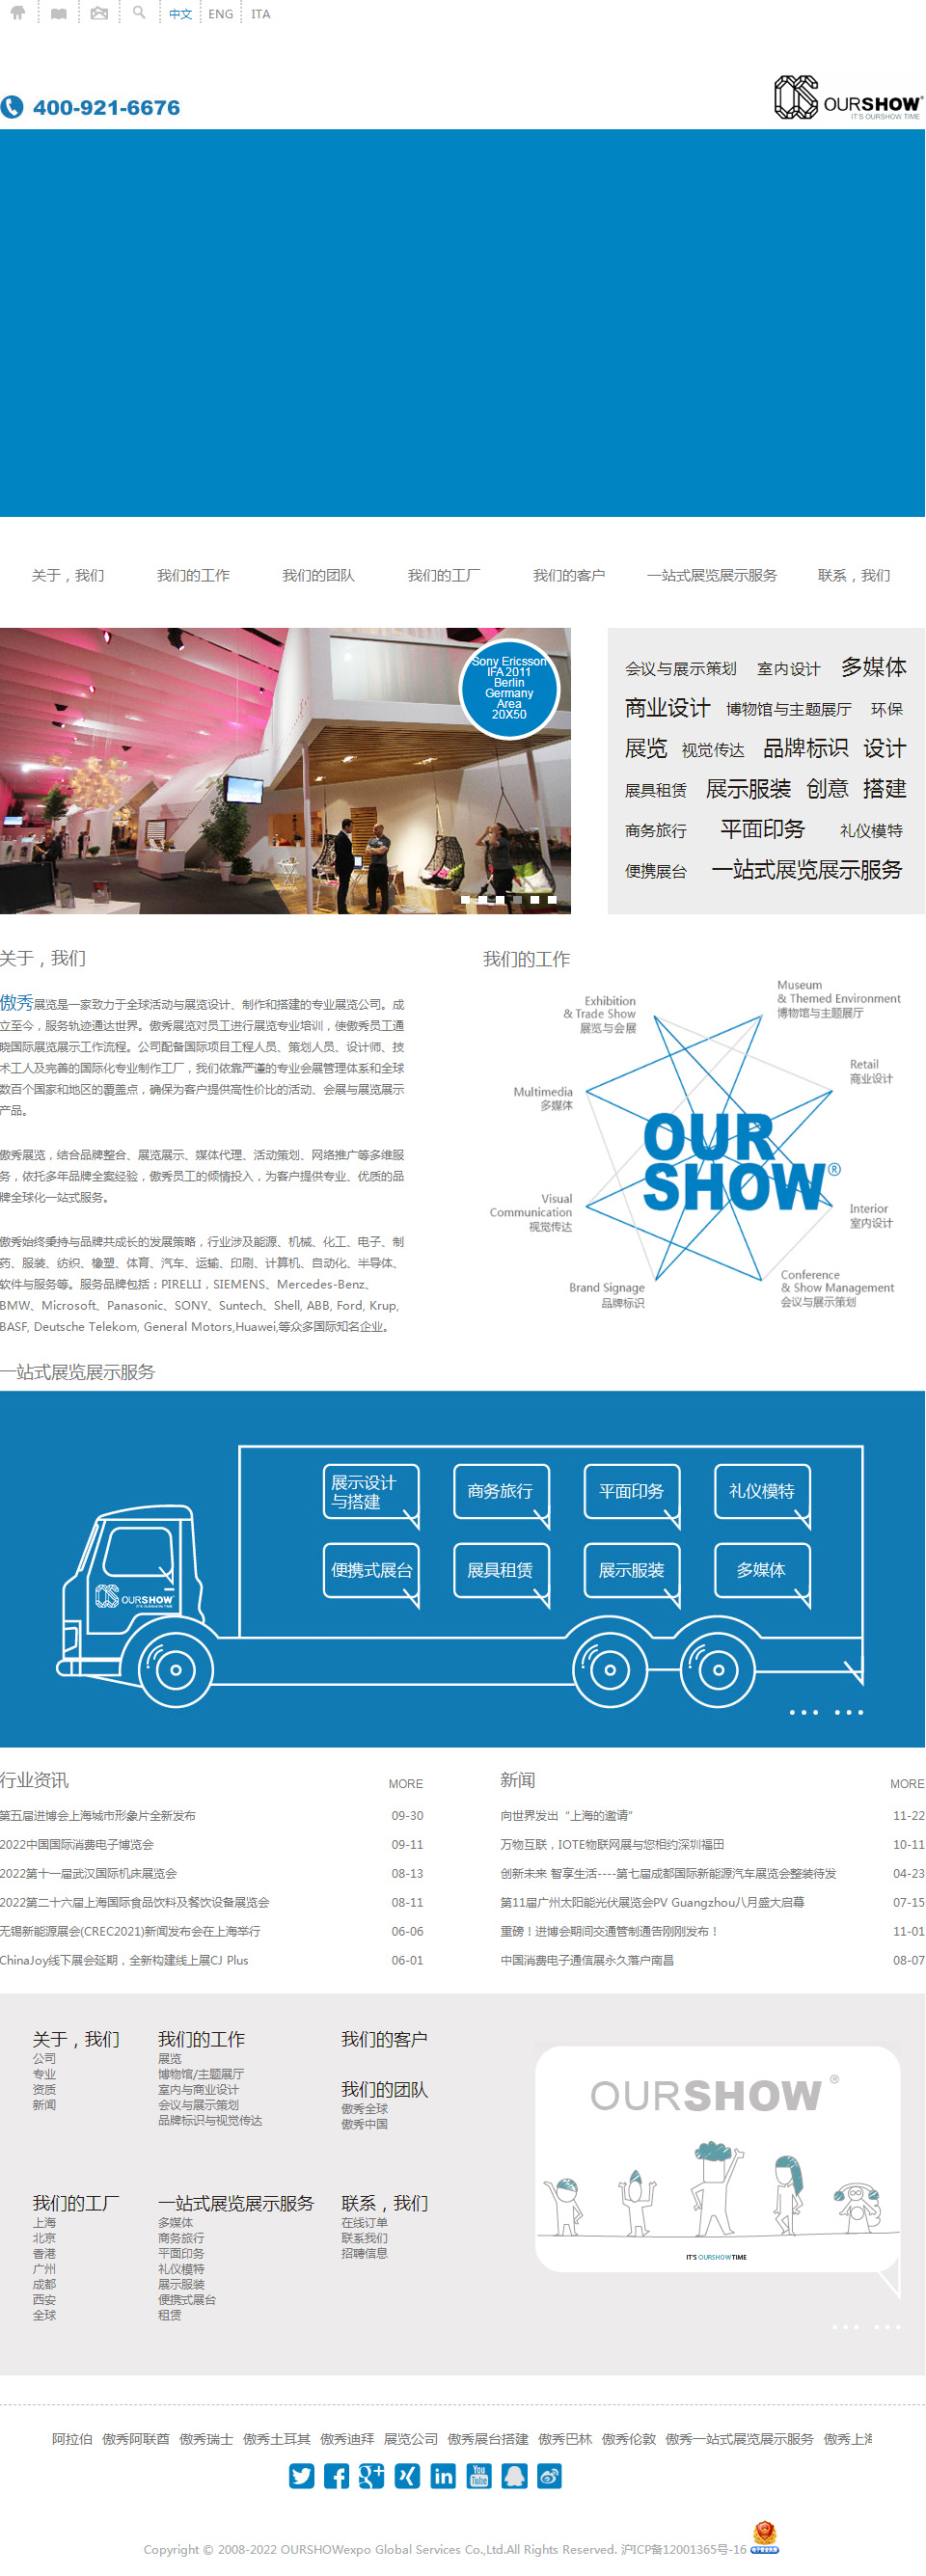 上海傲秀展览展示网站设计效果图